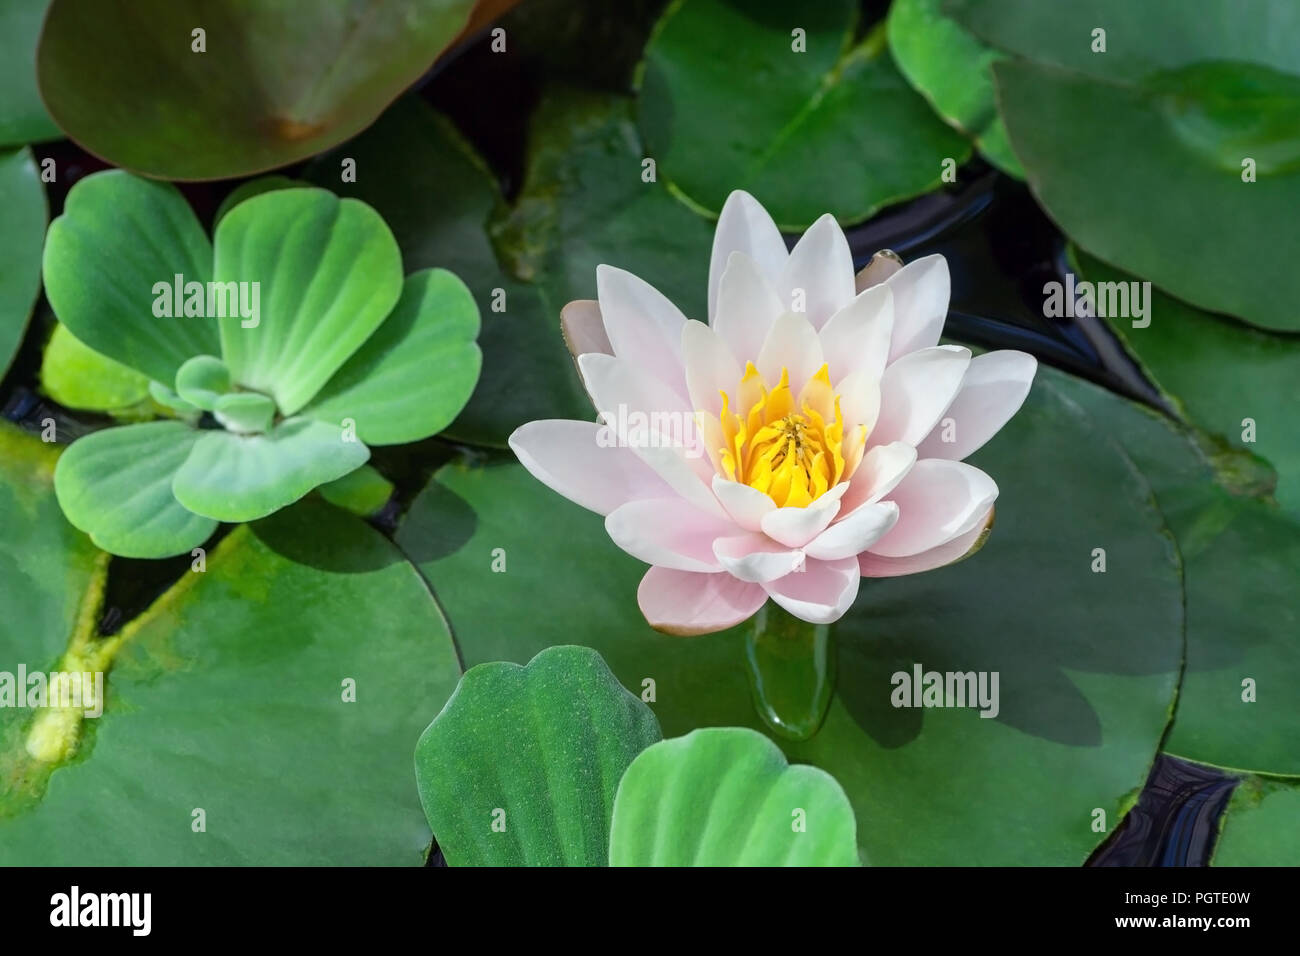 Blanco y rosa con un loto amarillo núcleo rodeado de plantas acuáticas en  el agua, la luz del sol ilumina la planta, una hermosa flor en el verano  Fotografía de stock -